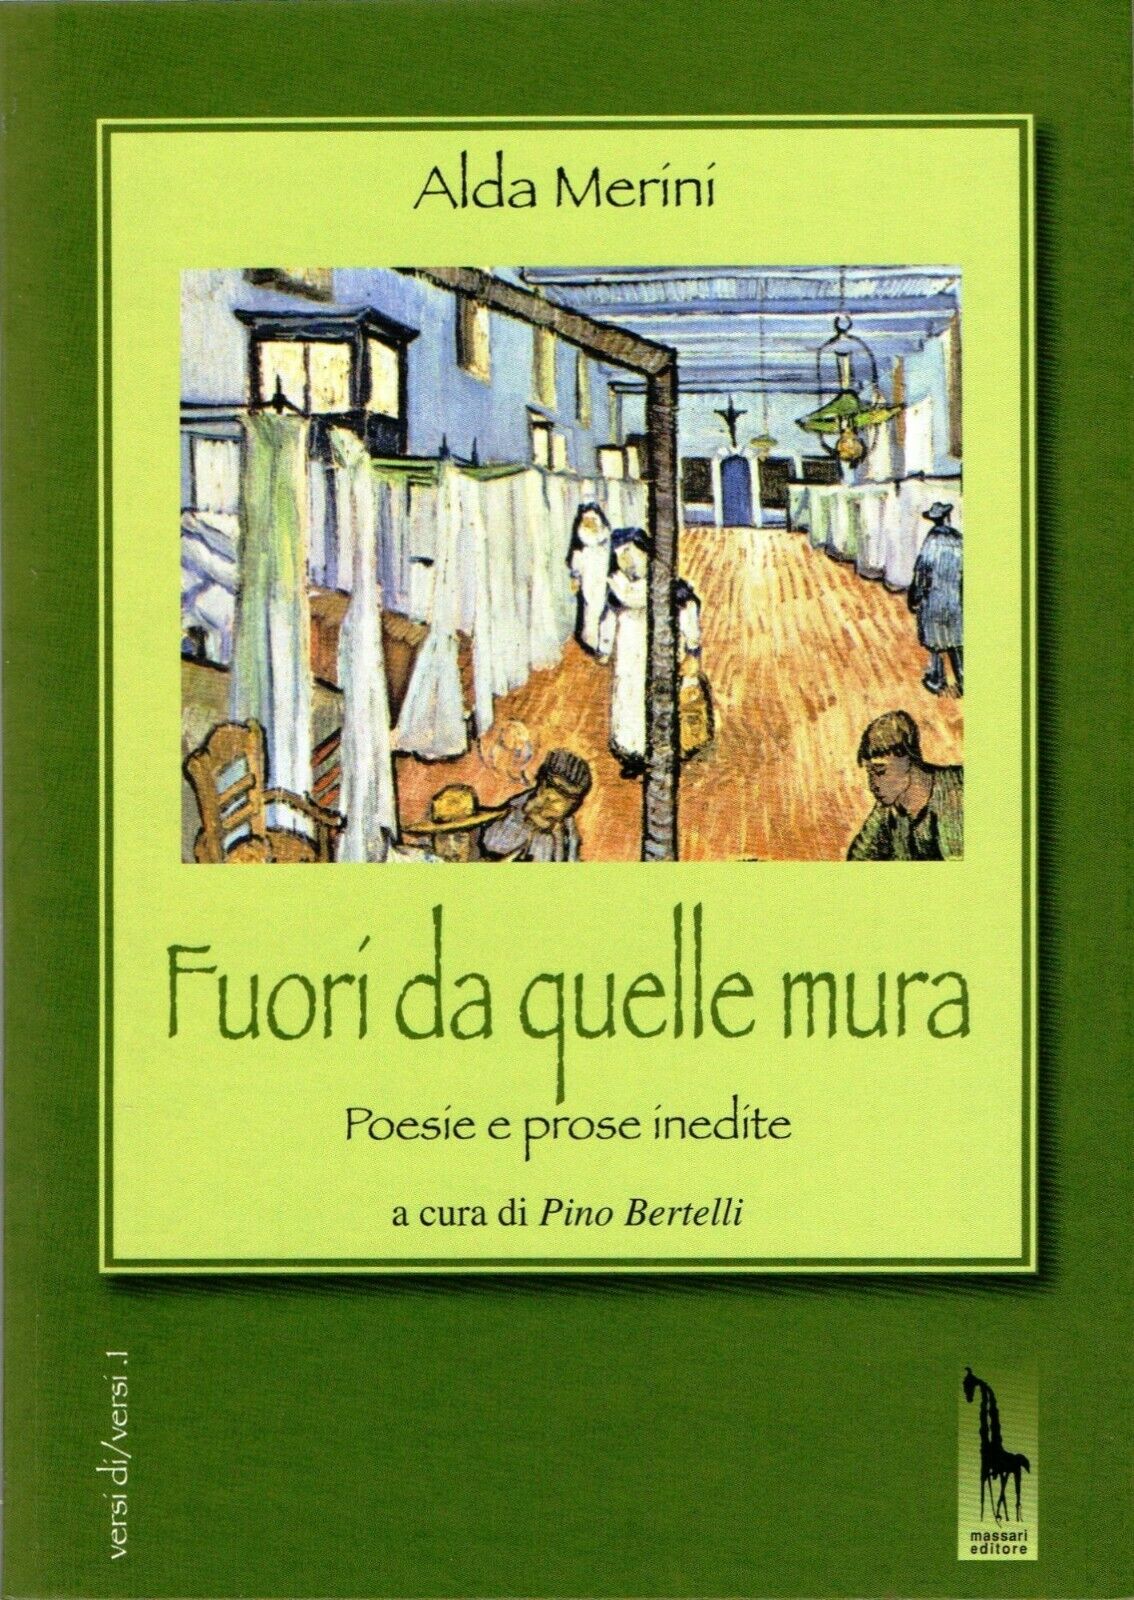 Fuori da quelle mura poesie e prose inedite di Alda Merini,  2012,  Massari Edit libro usato